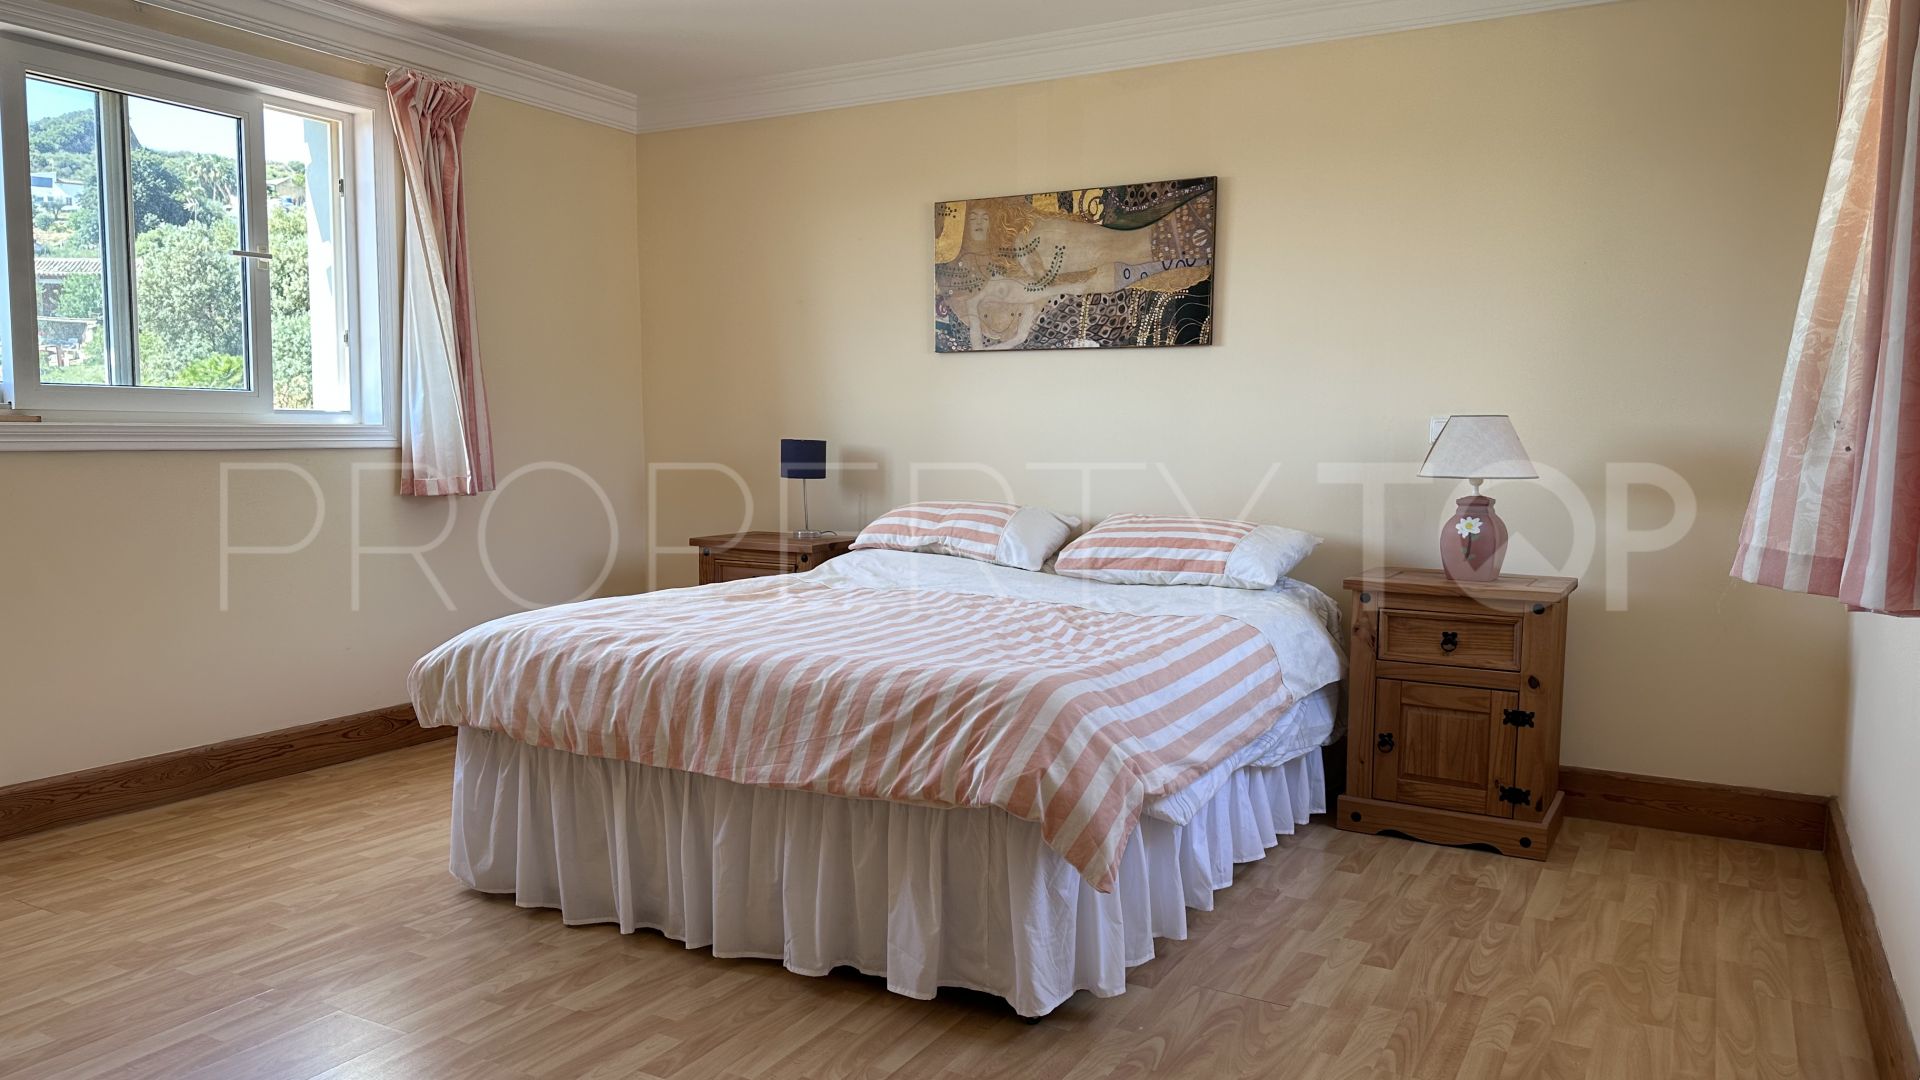 Finca with 5 bedrooms for sale in La Gaspara